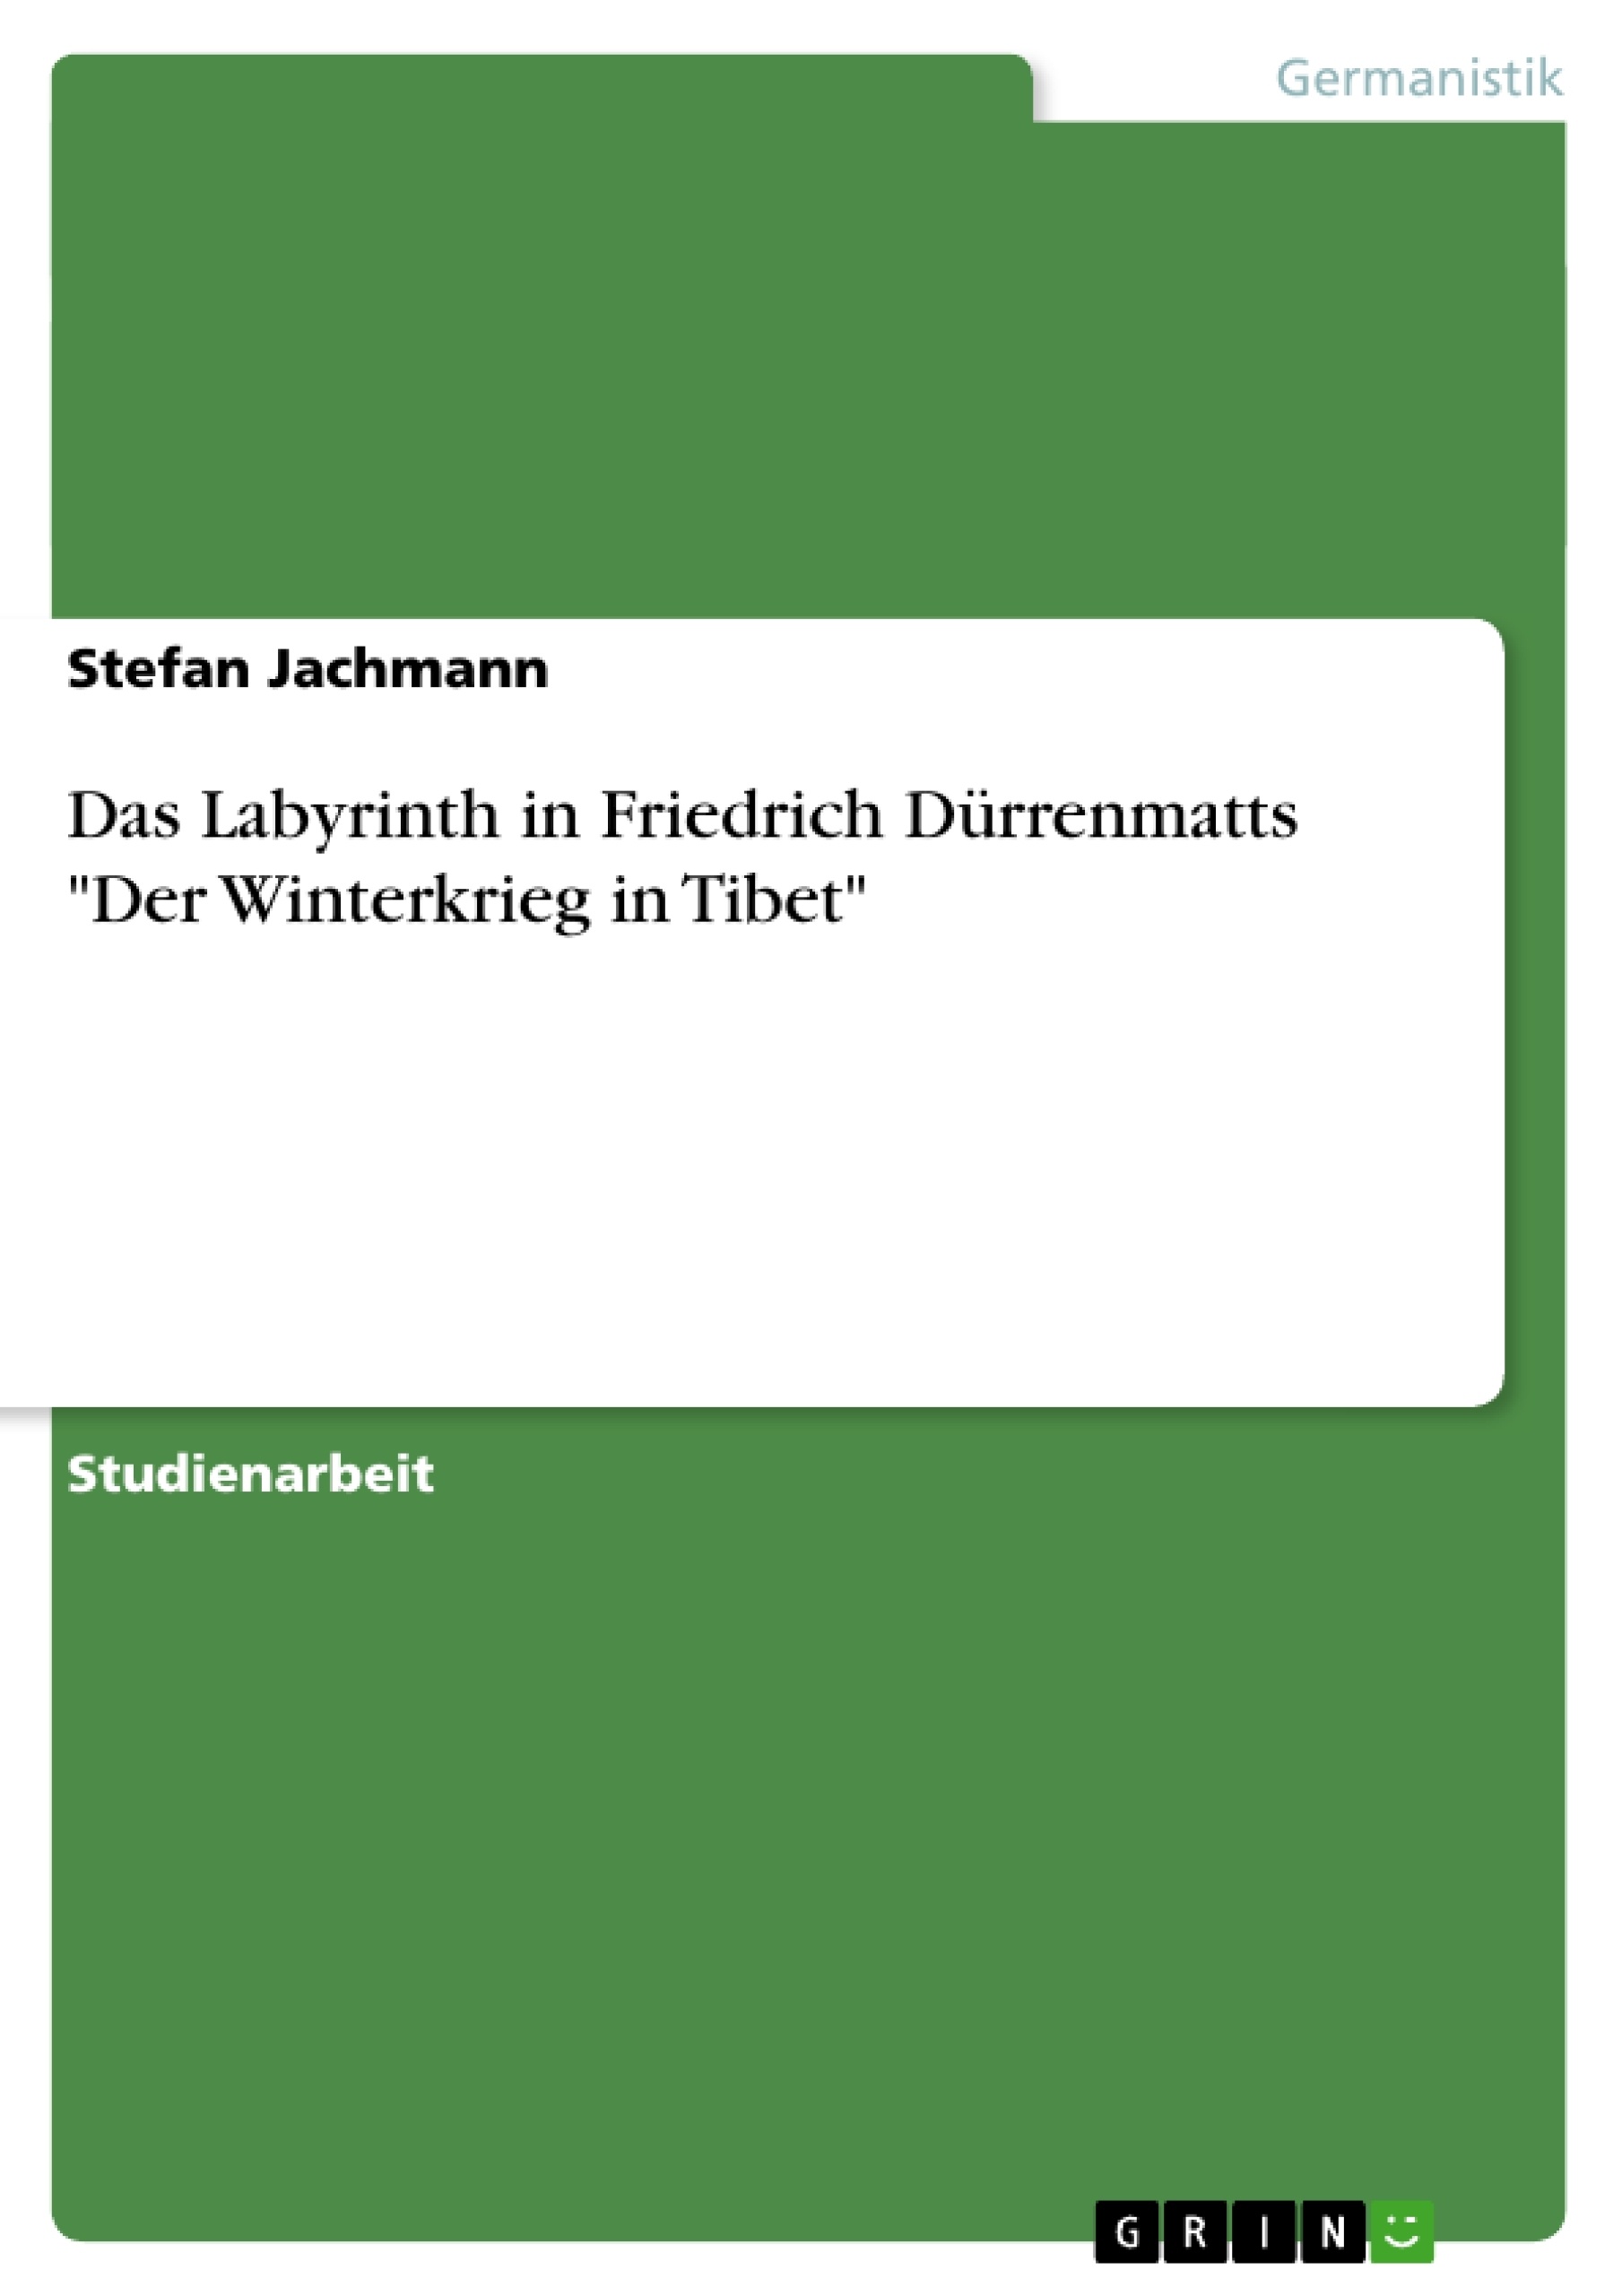 Title: Das Labyrinth in Friedrich Dürrenmatts "Der Winterkrieg in Tibet"